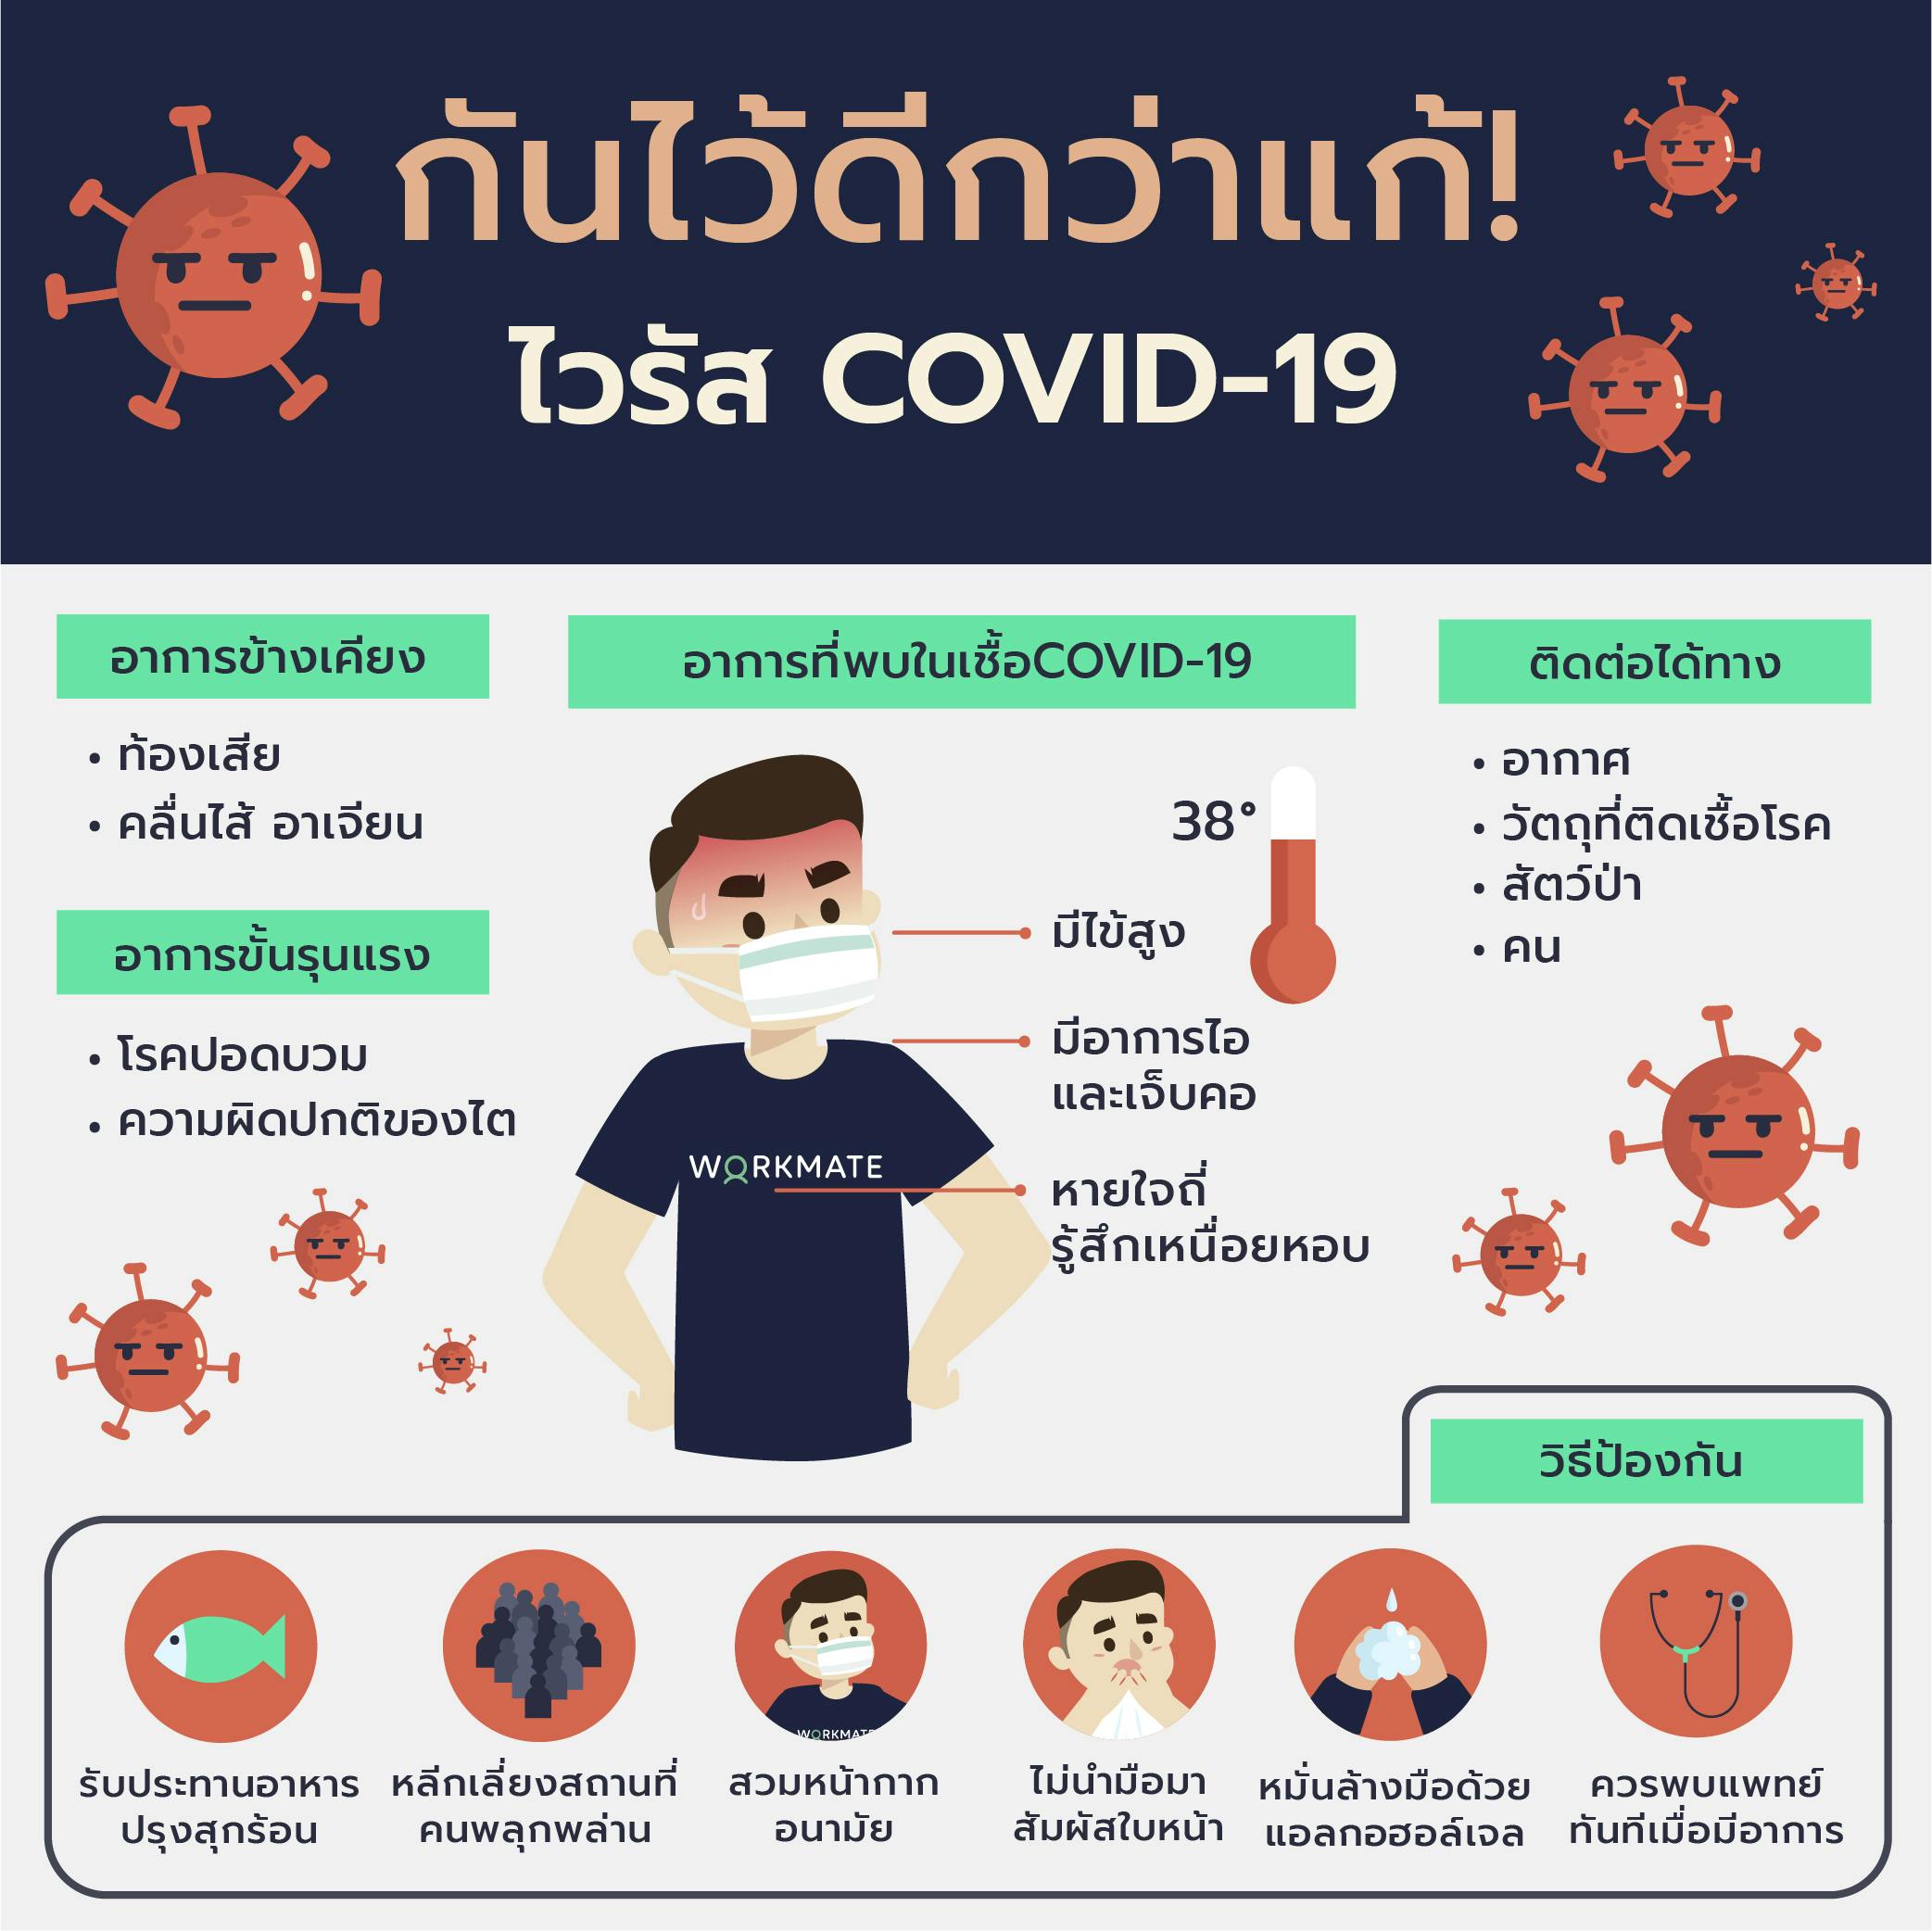 โควิดอาการ : à¸ªà¸ à¸à¸à¸ à¸ à¸à¹à¸ à¸­à¹à¸à¸§ à¸ 19 à¹à¸ à¸¡ 106 à¸£à¸²à¸¢ à¸¢à¸­à¸à¸ªà¸°à¸ªà¸¡ 827 à¸£à¸²à¸¢ à¹à¸ª à¸¢à¸ à¸§ à¸ 4 à¸£à¸²à¸¢ Thaipublica : ทั้งนี้สถานการณ์ โรคติดเชื้อไวรัสโคโรนา 2019 ทั่วโลก ผู้ติดเชื้อเพิ่มใหม่ 684,085 ราย ยอดผู้ติดเชื้อรวม 66,223,906 ราย อาการรุนแรง 106,090 ราย.